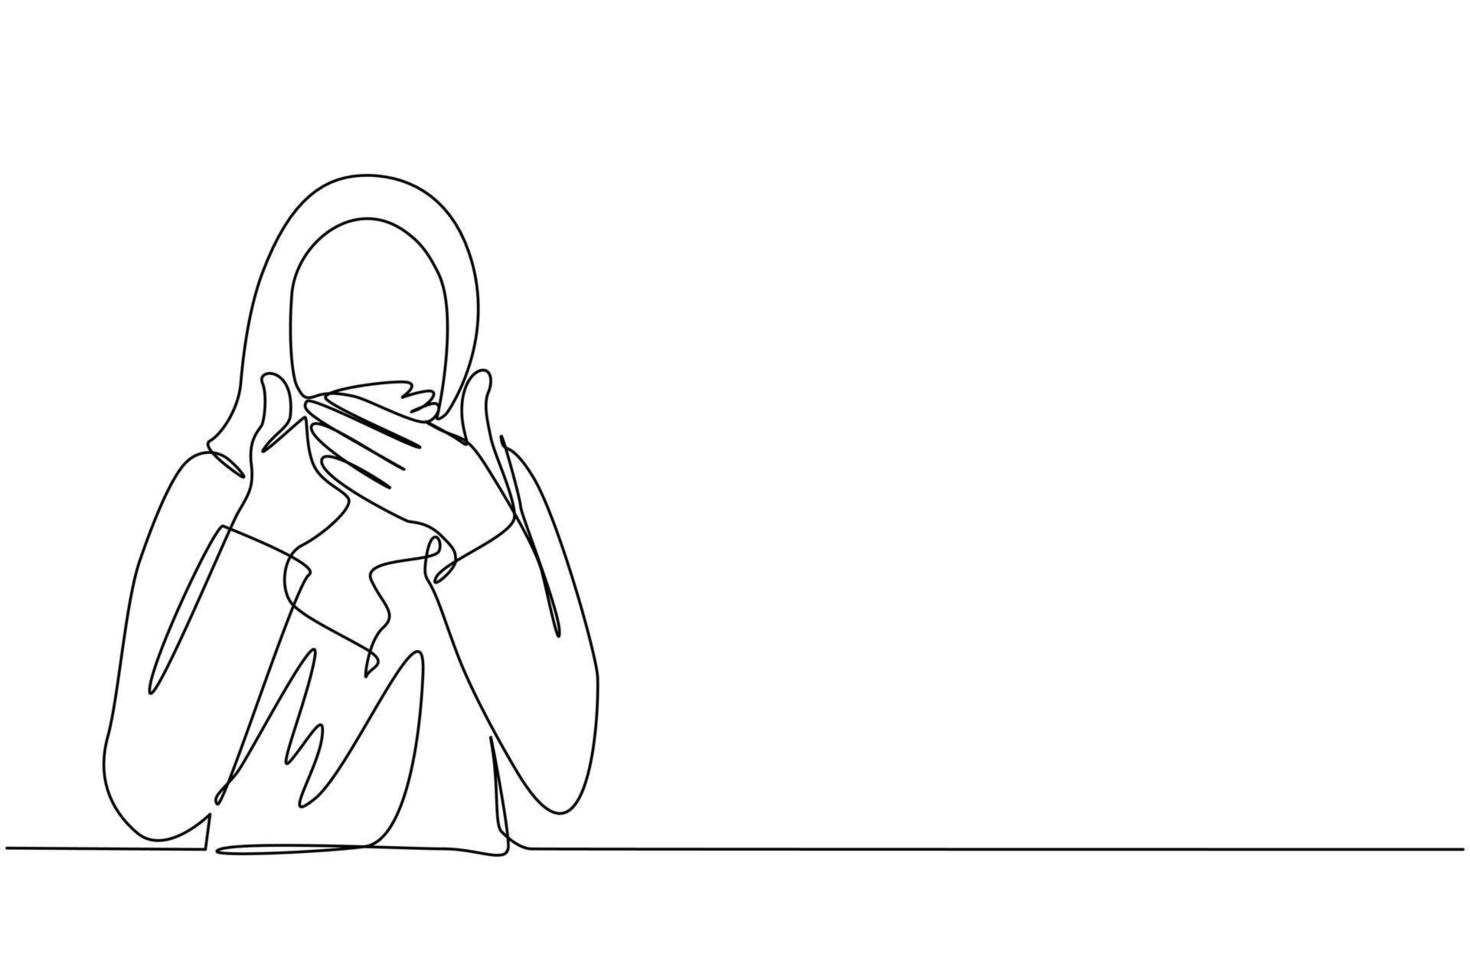 dibujo continuo de una línea mujer árabe cubriendo la boca con las manos. boca femenina con la mano sorprendida de vergüenza por error, expresión de miedo, asustada en silencio, secreta. vector de diseño de dibujo de una sola línea